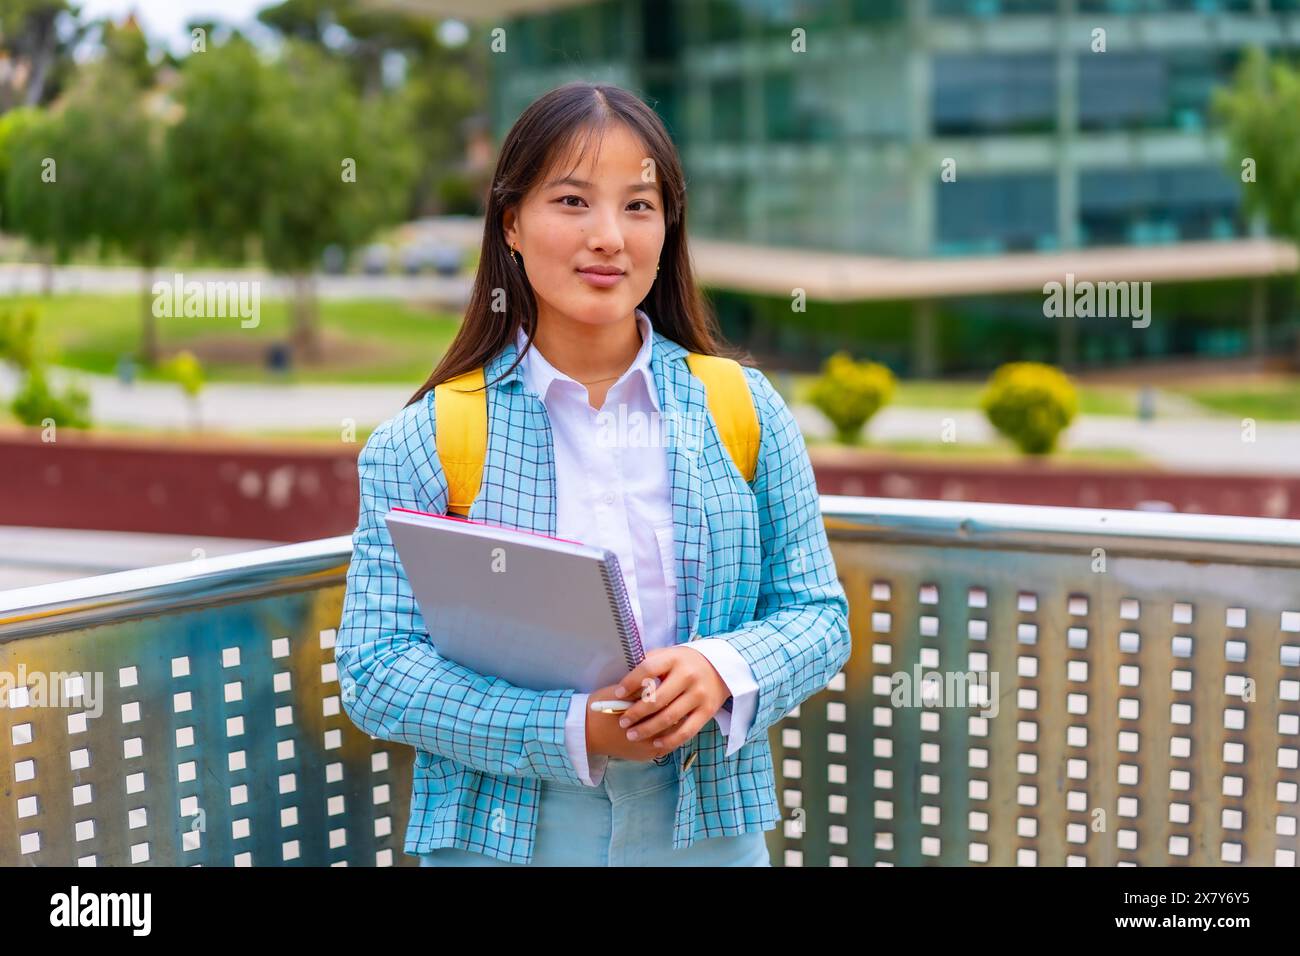 Portrait de trois quarts de longueur d'une étudiante asiatique de beauté debout fièrement à l'extérieur de l'université Banque D'Images